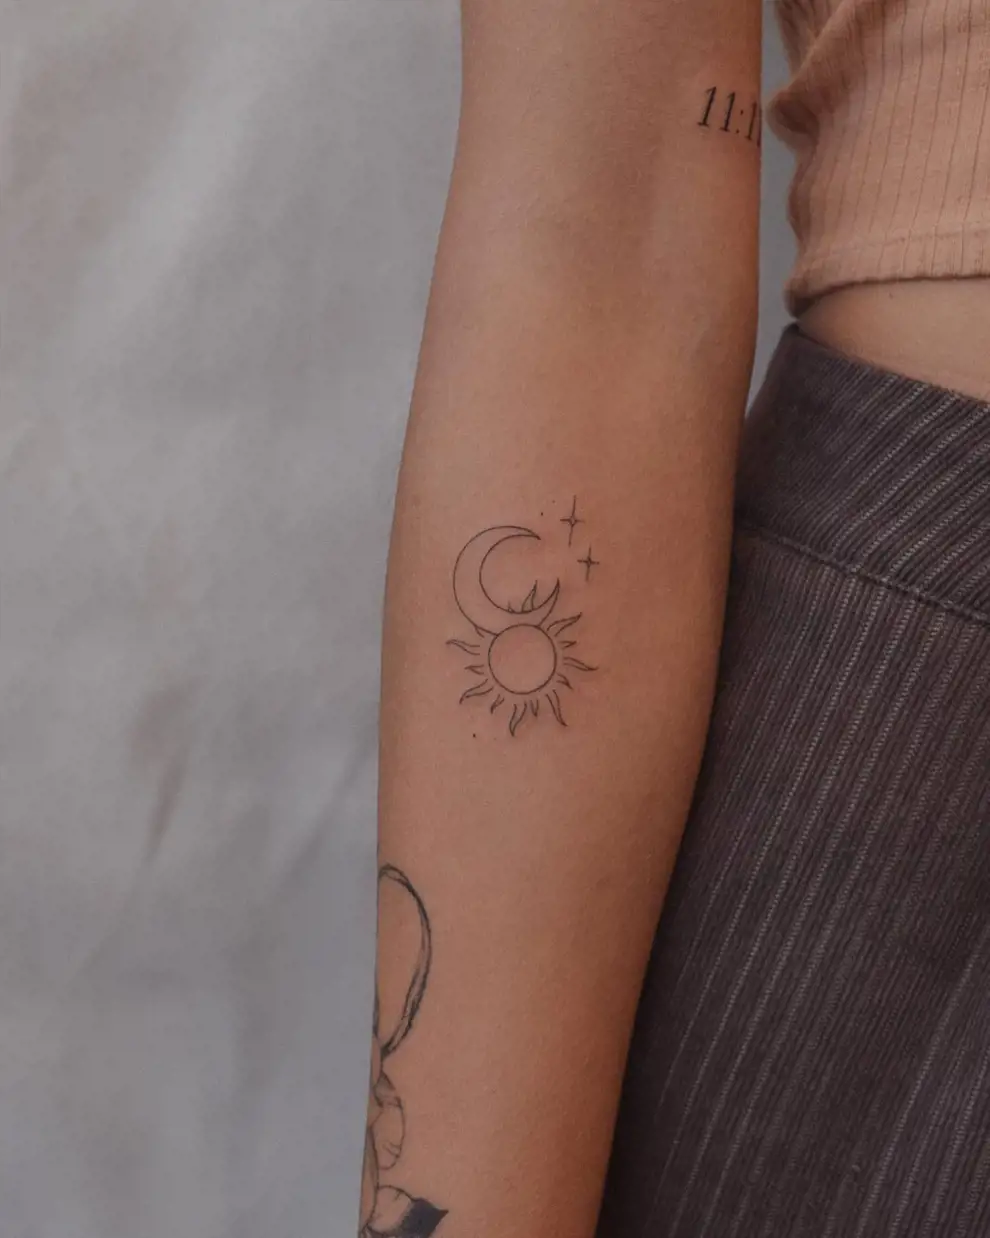 Tatuaje sol y luna minimalista: enlazados